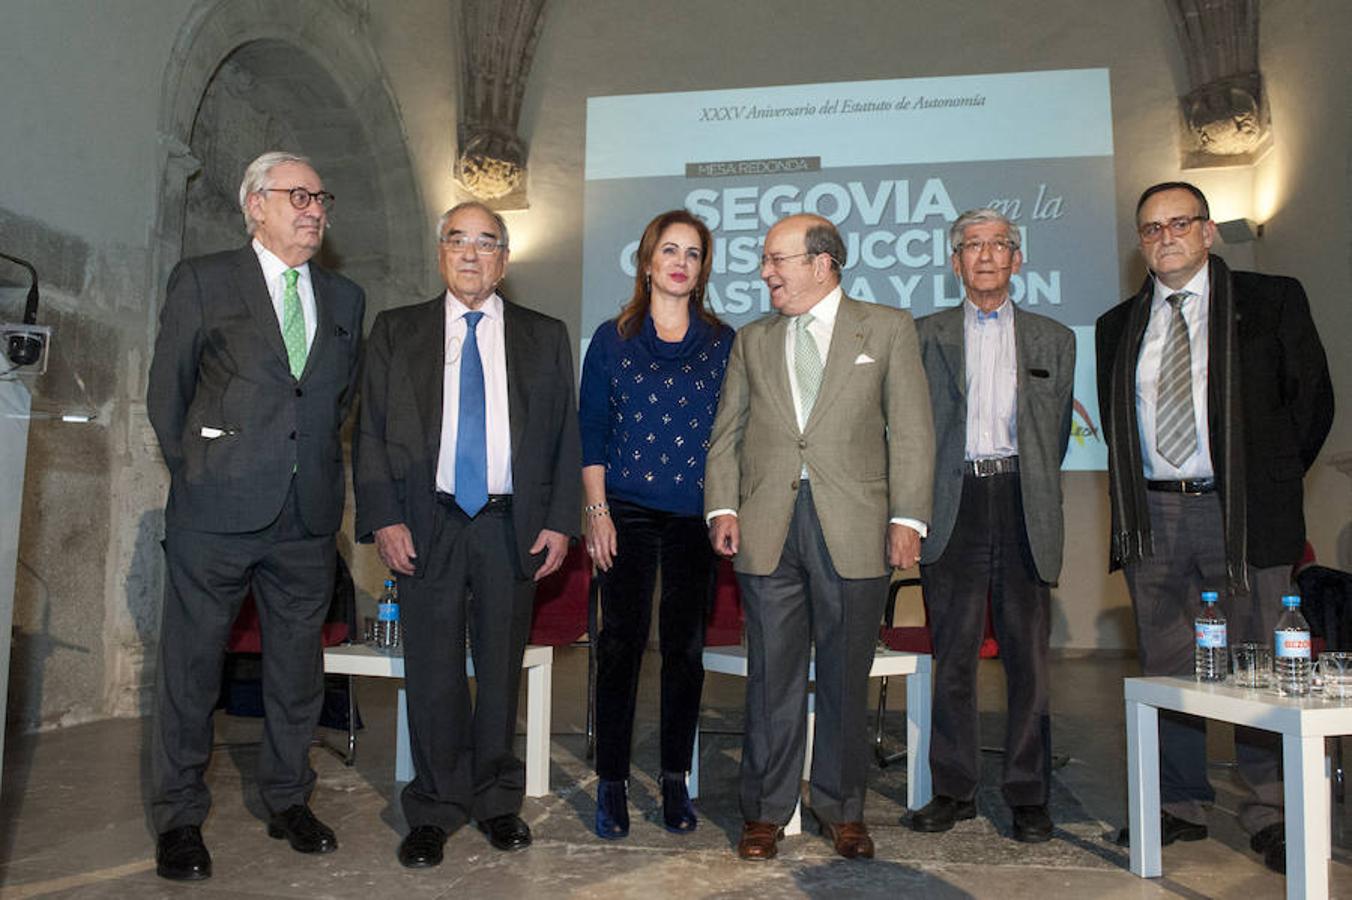 Fotos: Segovia debate sobre la construcción de Castilla y León